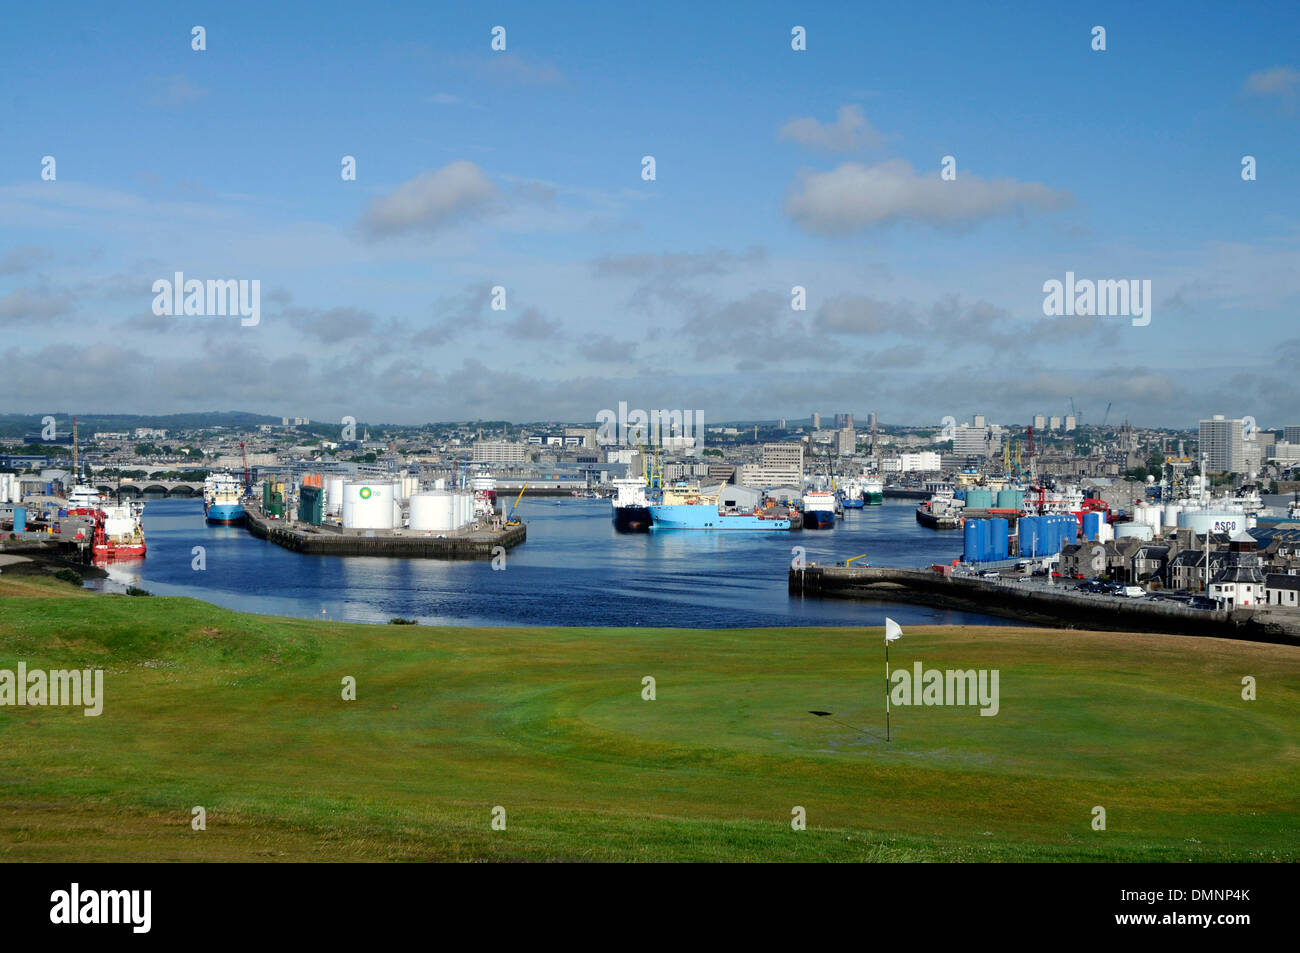 Aberdeen Ciudad de granito puerto comercial de los puertos marítimos de ingeniería marina Foto de stock